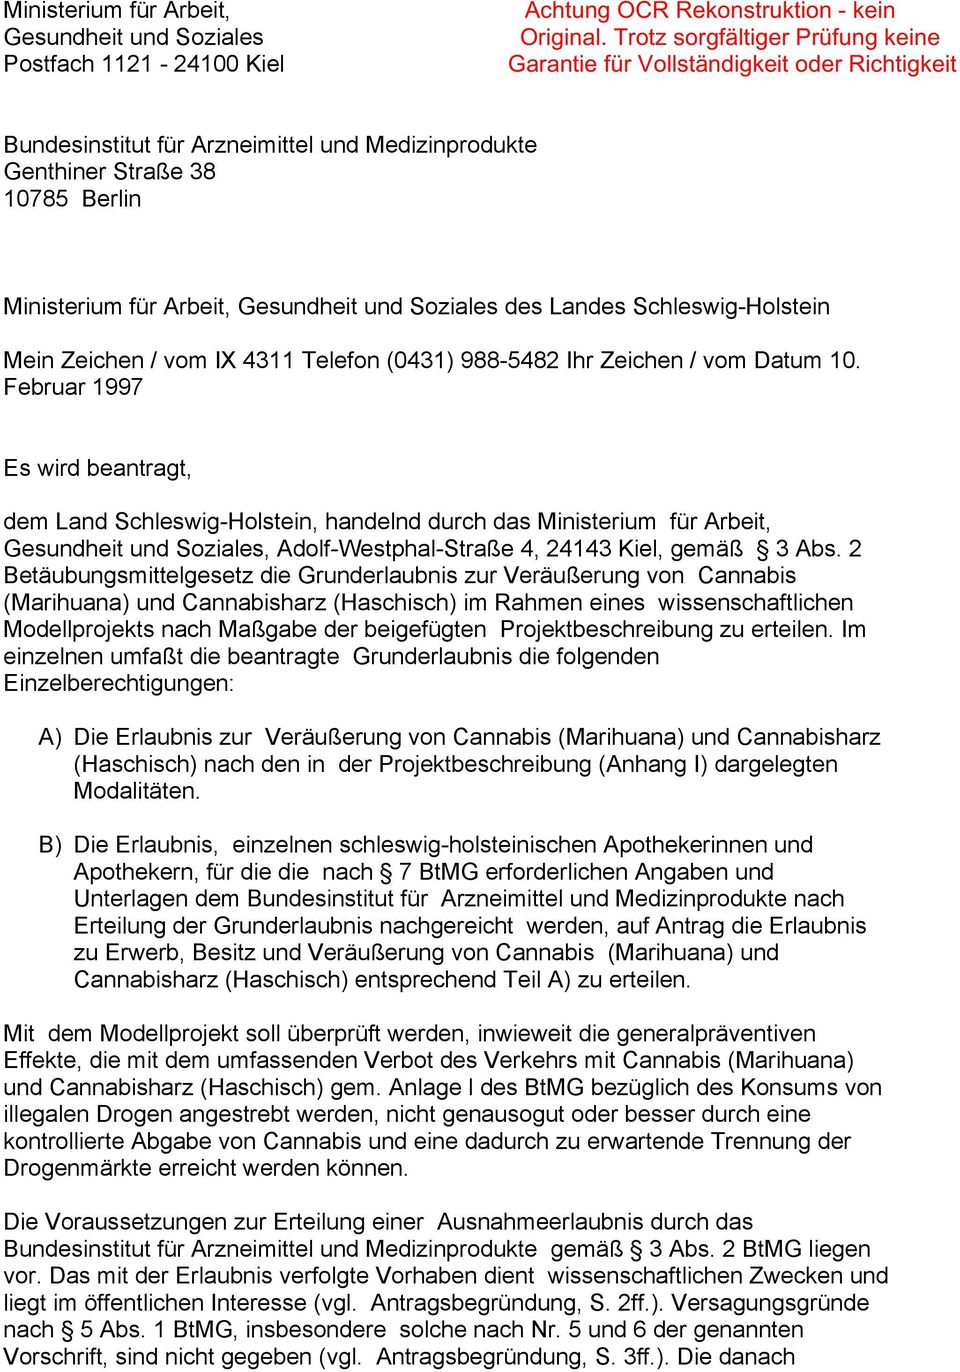 und Soziales des Landes Schleswig-Holstein Mein Zeichen / vom IX 4311 Telefon (0431) 988-5482 Ihr Zeichen / vom Datum 10.